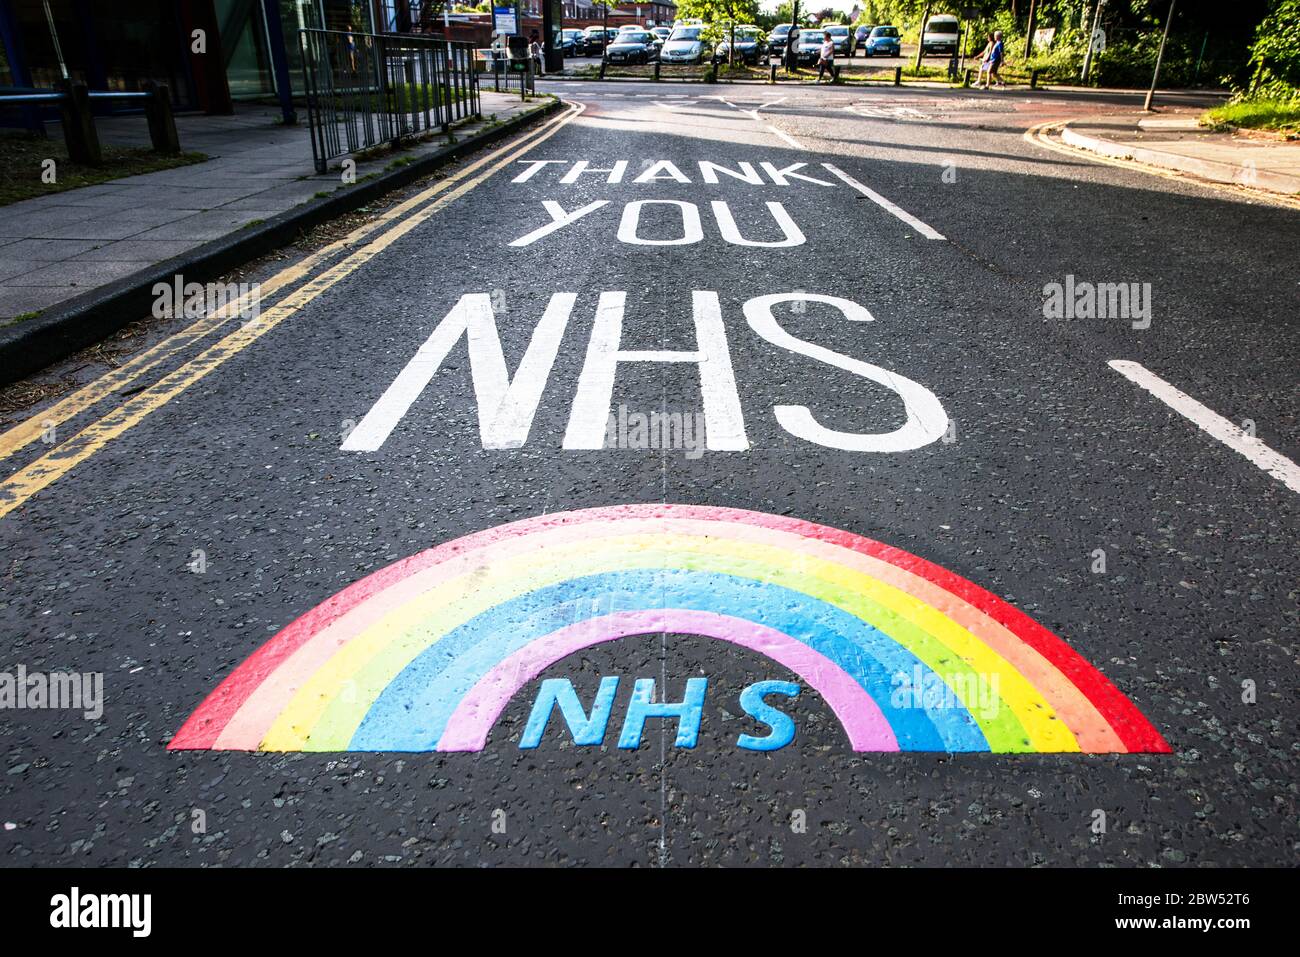 Nouvelles taches de peinture Merci NHS et un arc-en-ciel ont été peints à l'extérieur d'un centre médical à Manchester pour remercier tout le personnel de première ligne NHS. Banque D'Images